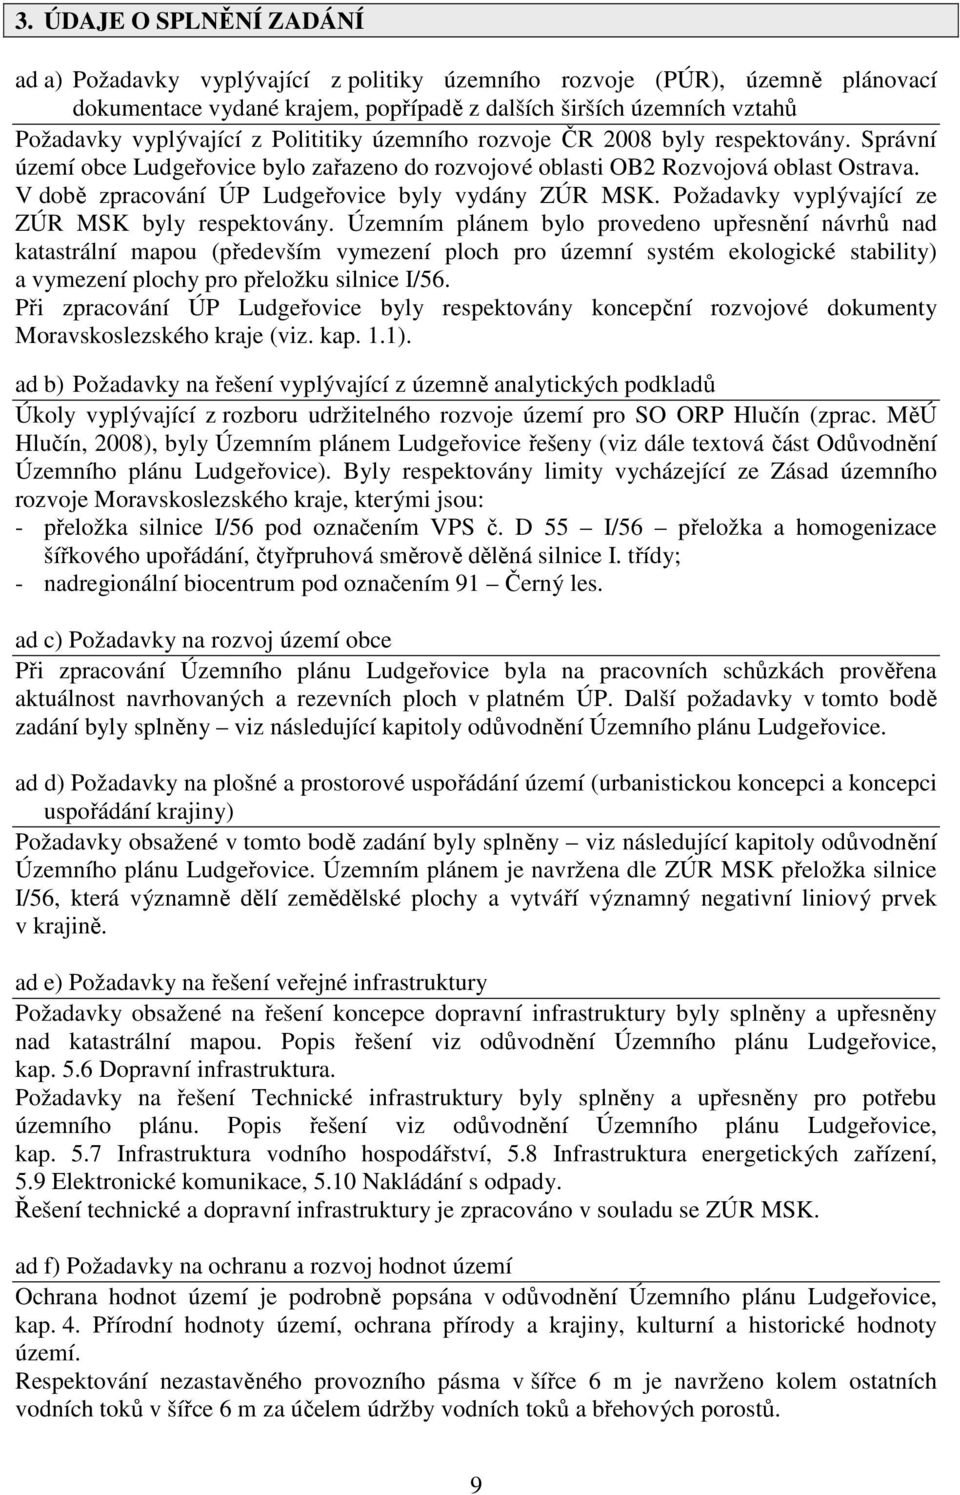 V době zpracování ÚP Ludgeřovice byly vydány ZÚR MSK. Požadavky vyplývající ze ZÚR MSK byly respektovány.